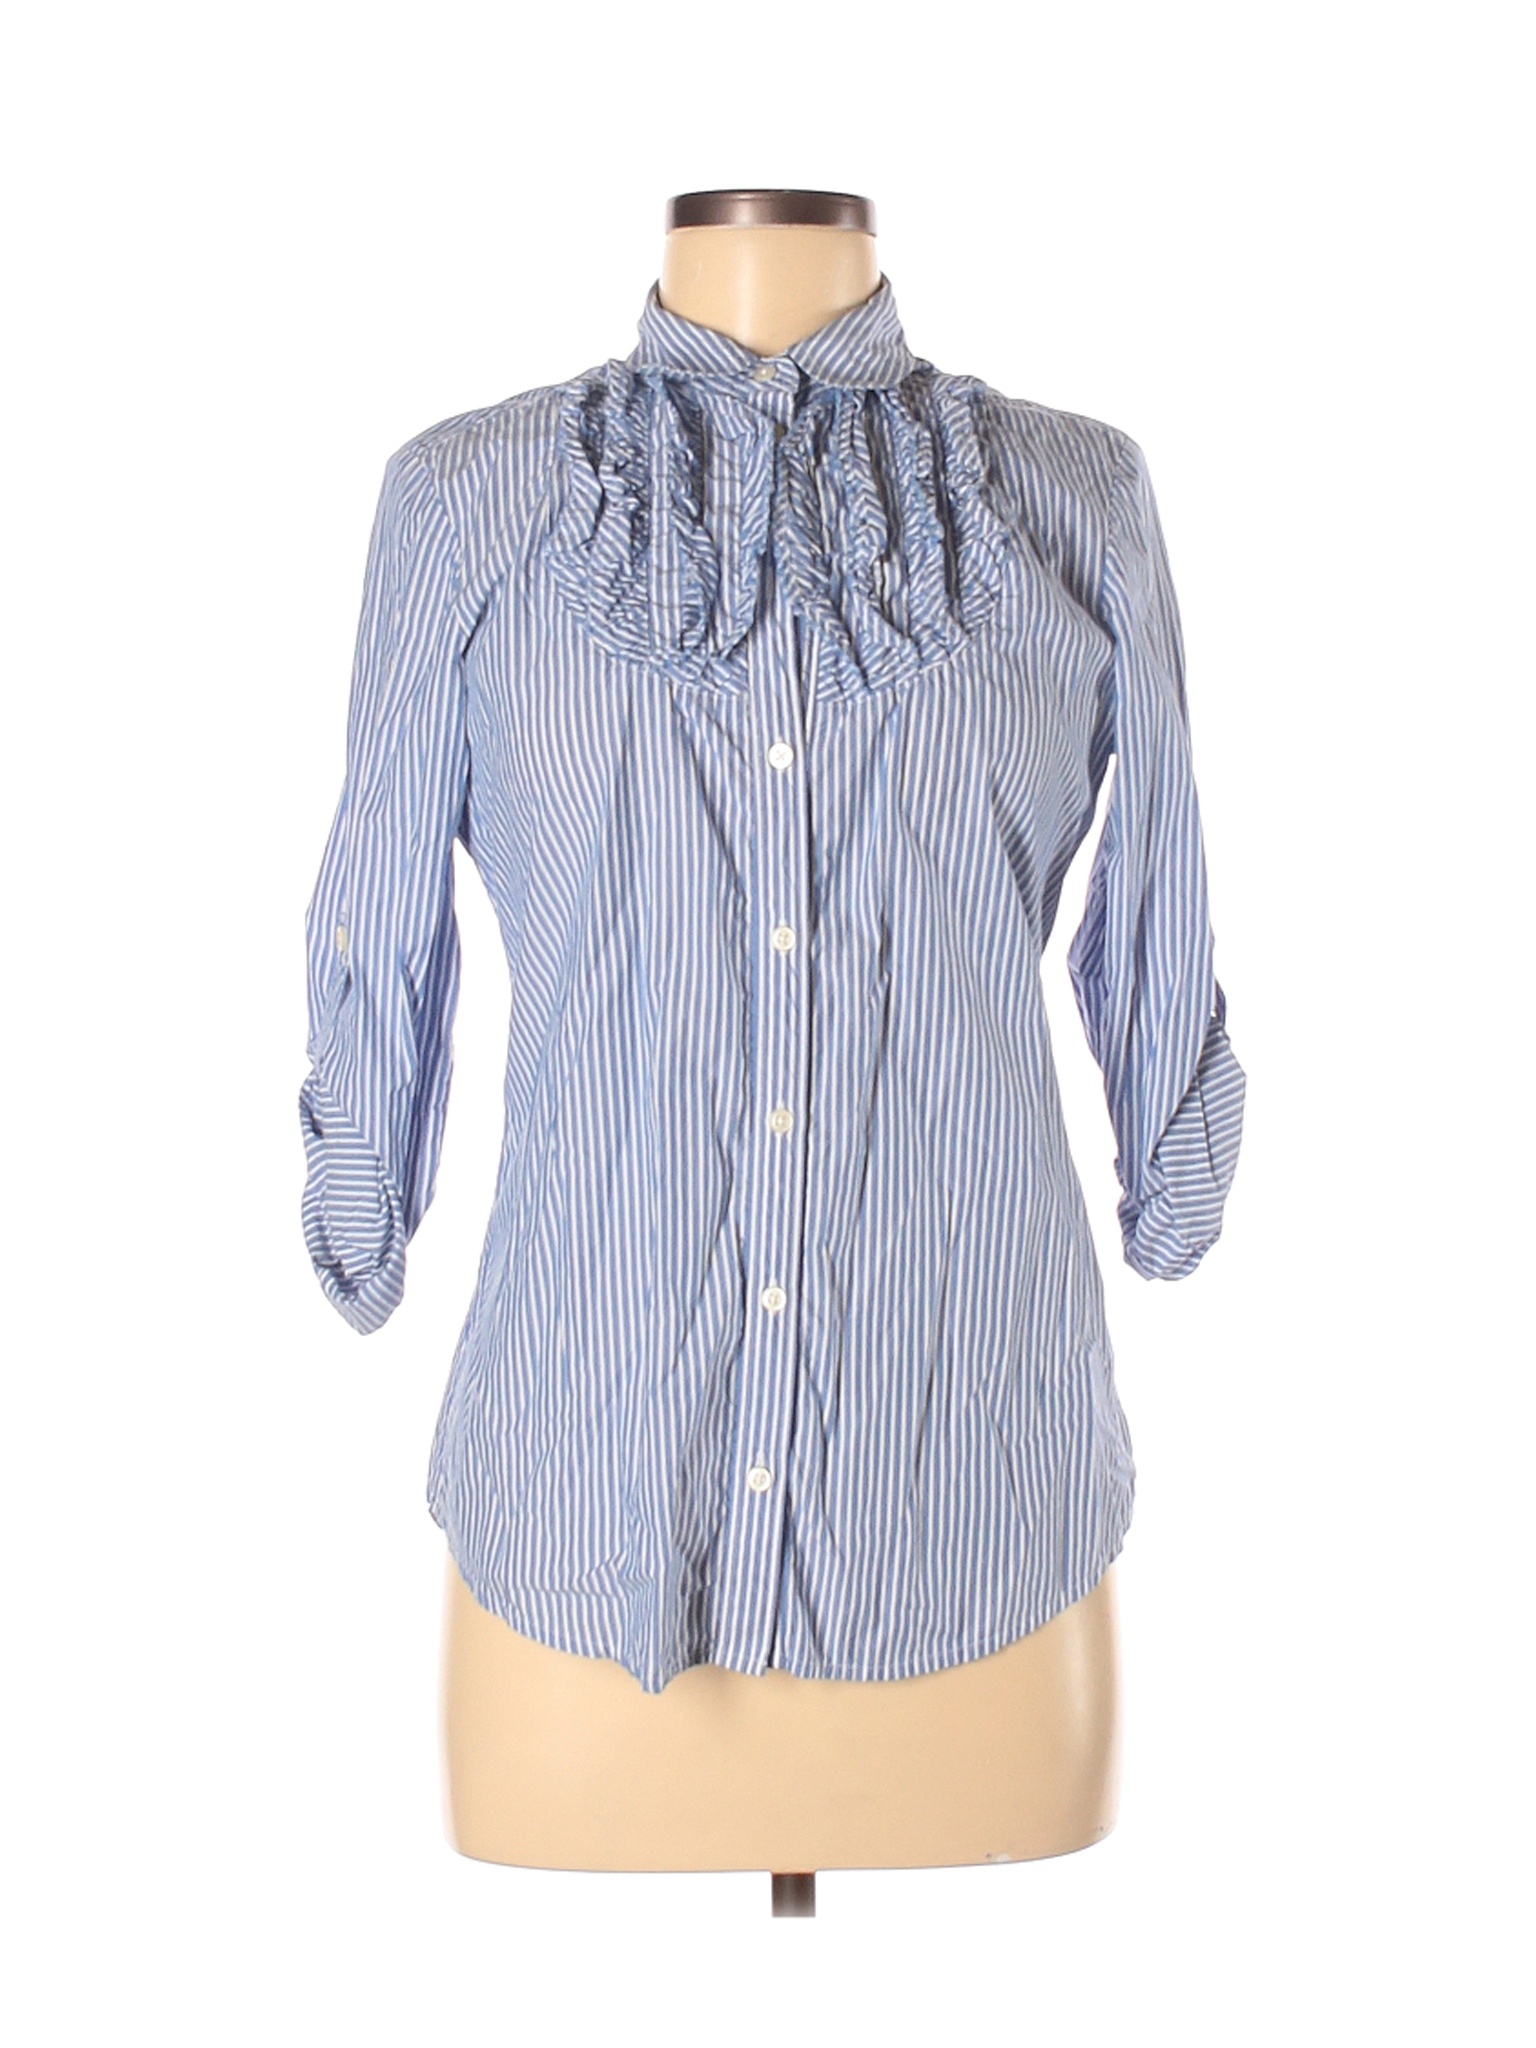 Gap Women Blue 3/4 Sleeve Button-Down Shirt 6 | eBay